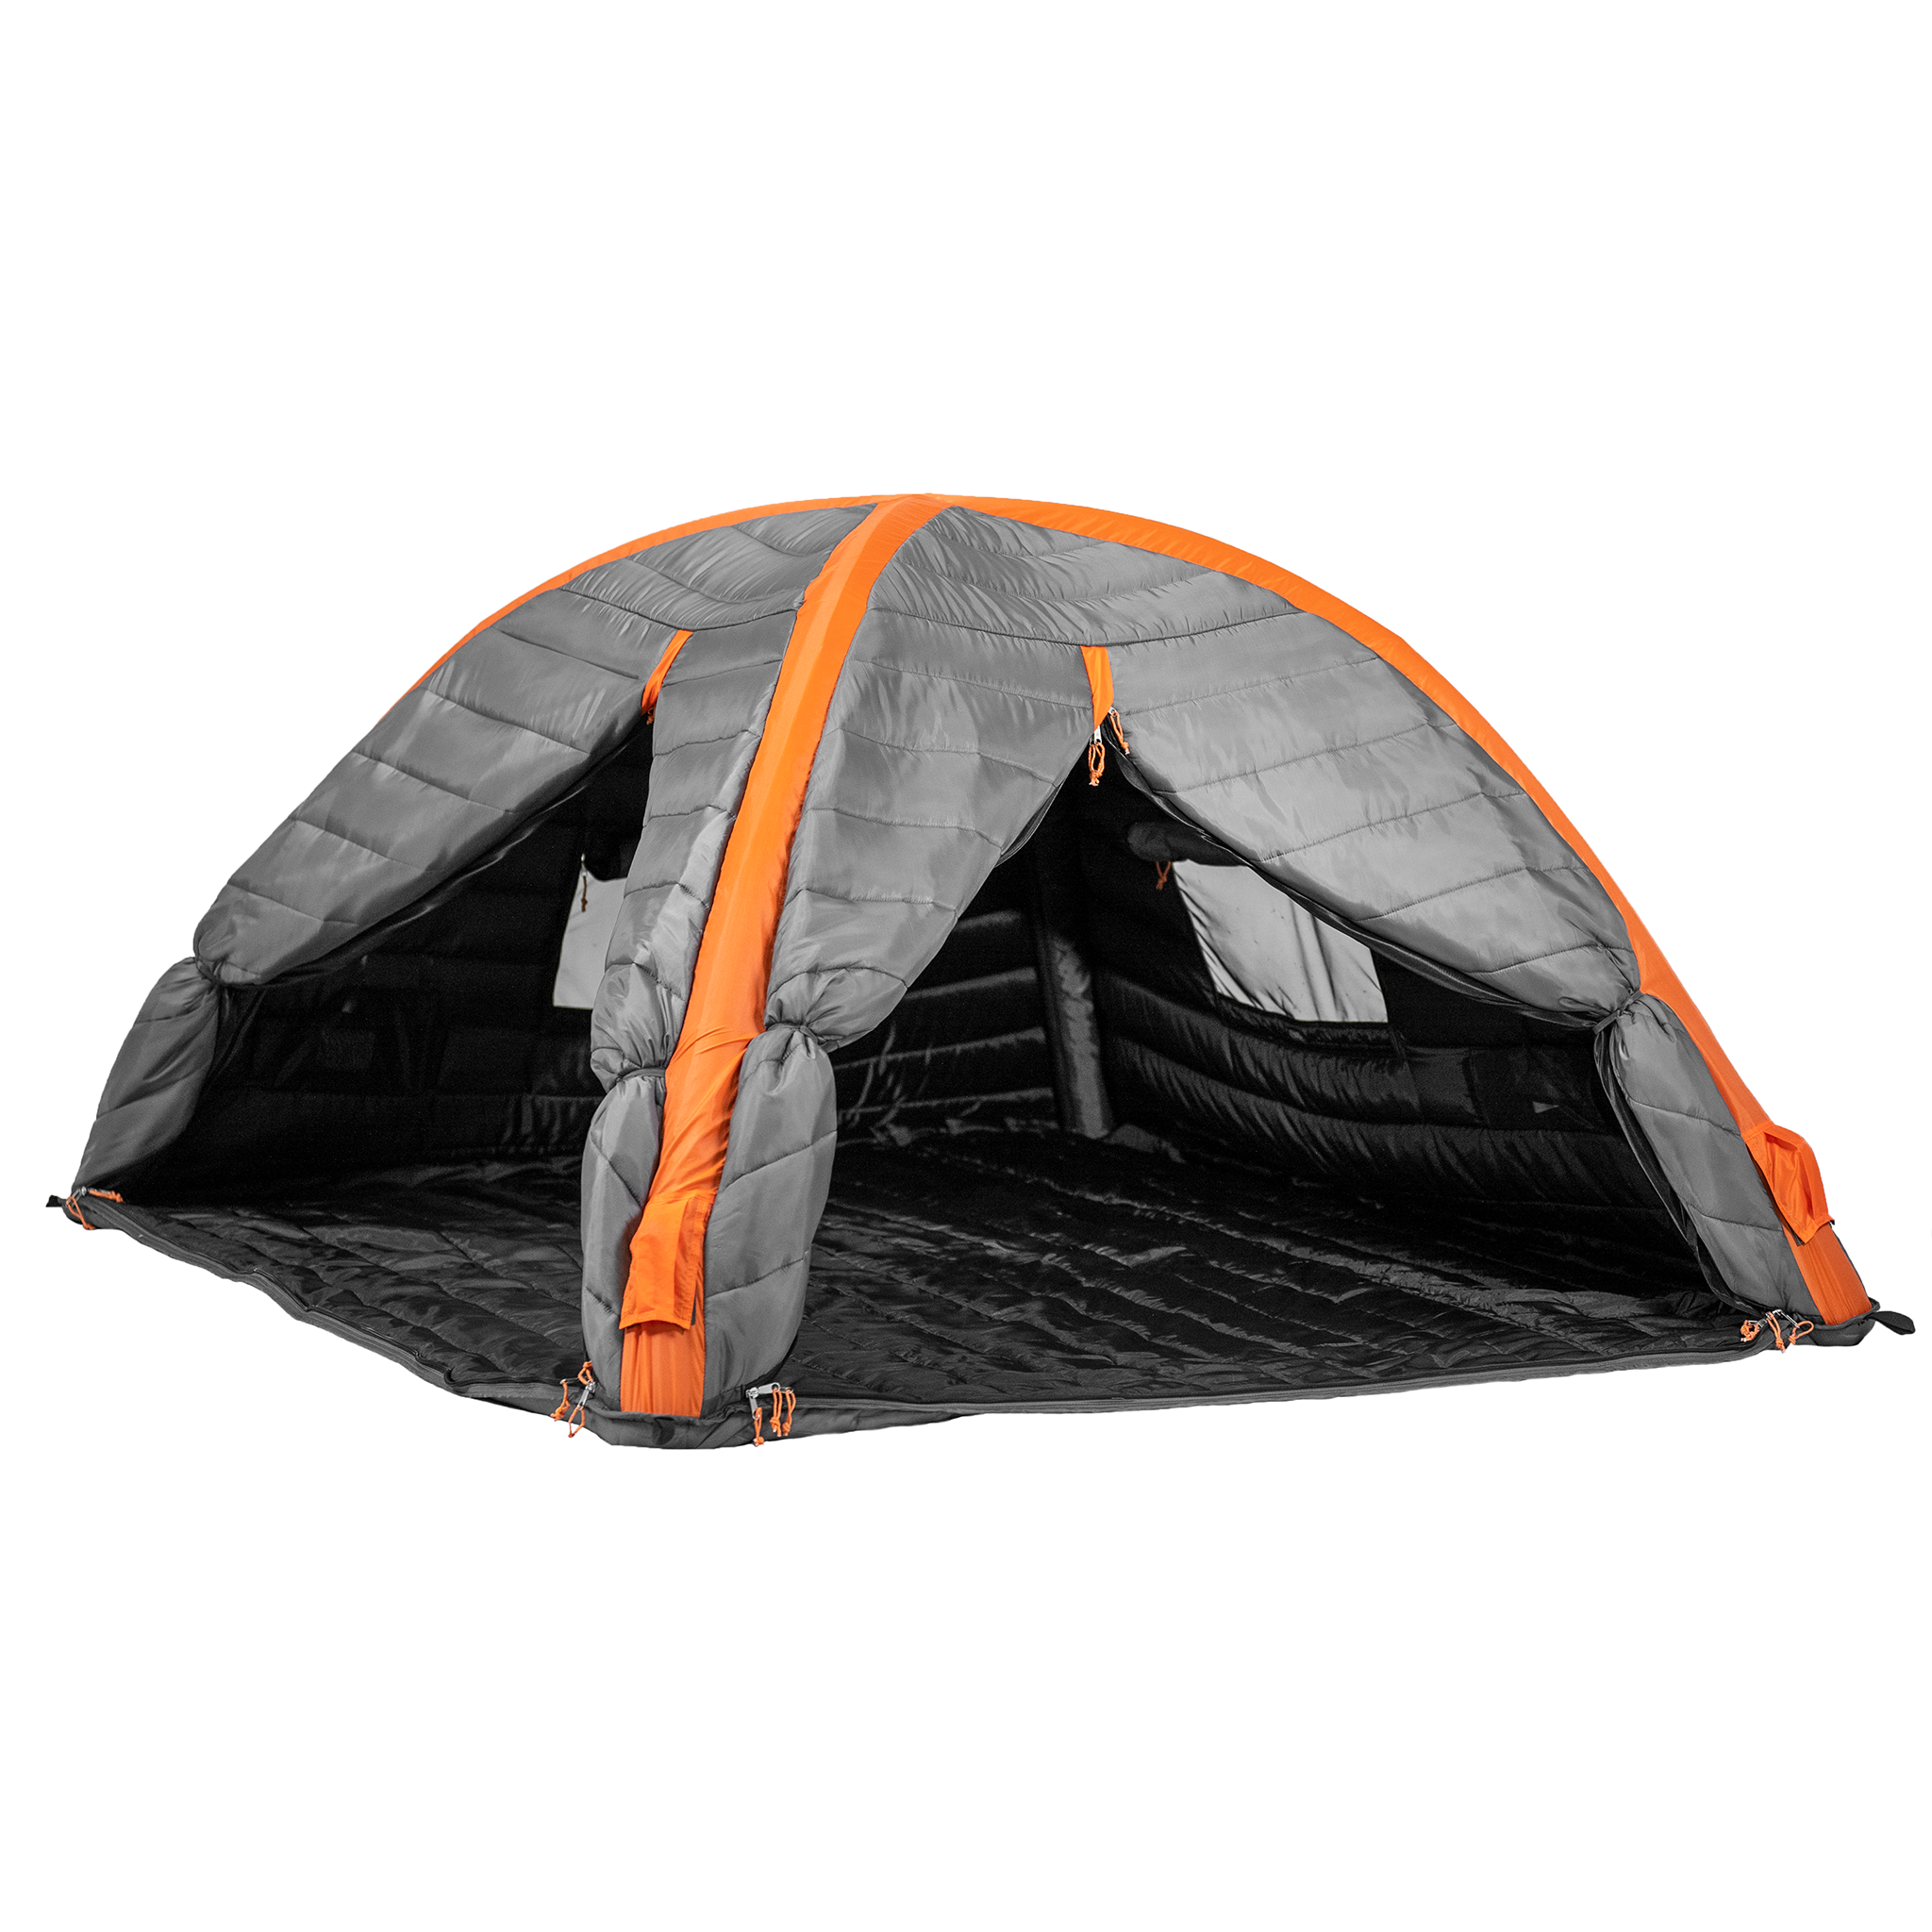 Culla Maxx | 3 Person Insulated Inner Tent